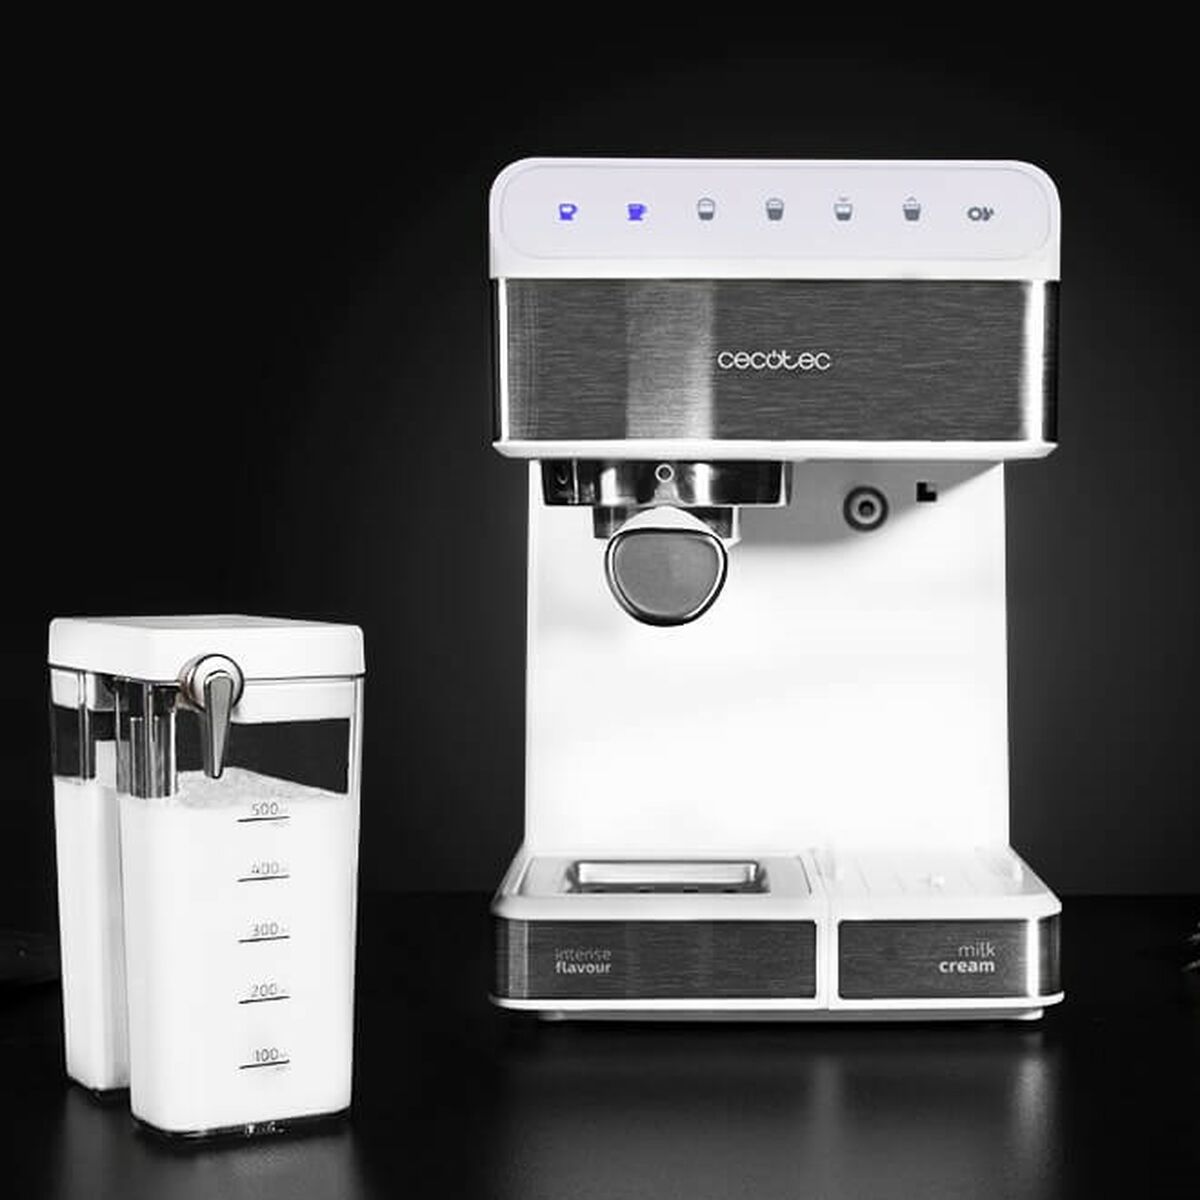 Express Manual Coffee Machine Cecotec 1350W 1,4 L Wit 1,4 L